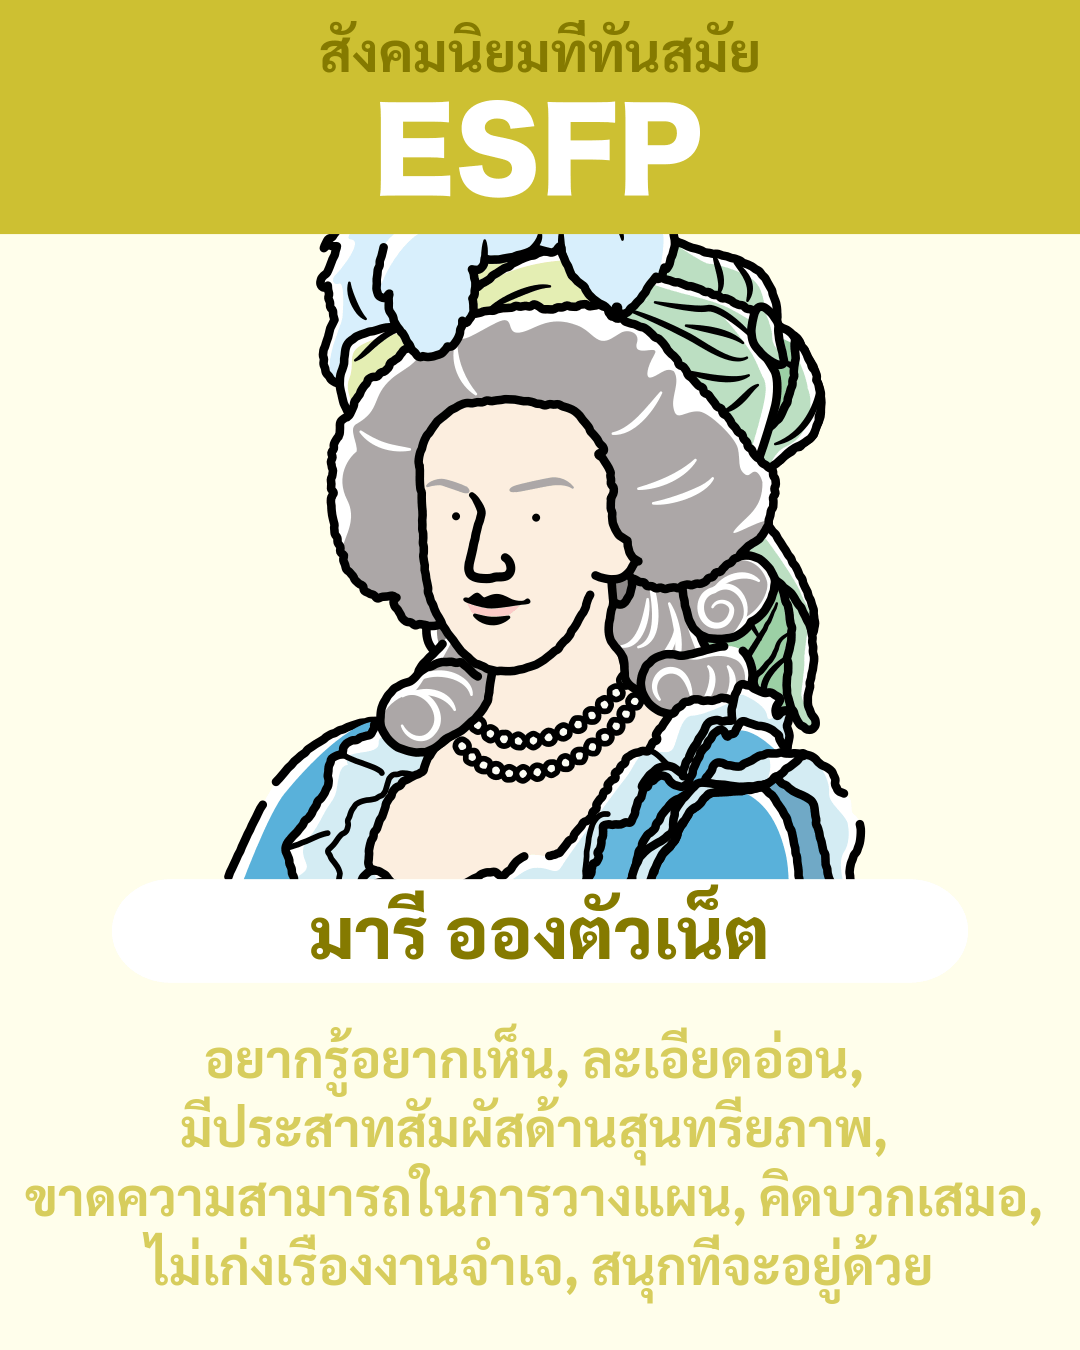 มารี อองตัวเน็ต - ESFP